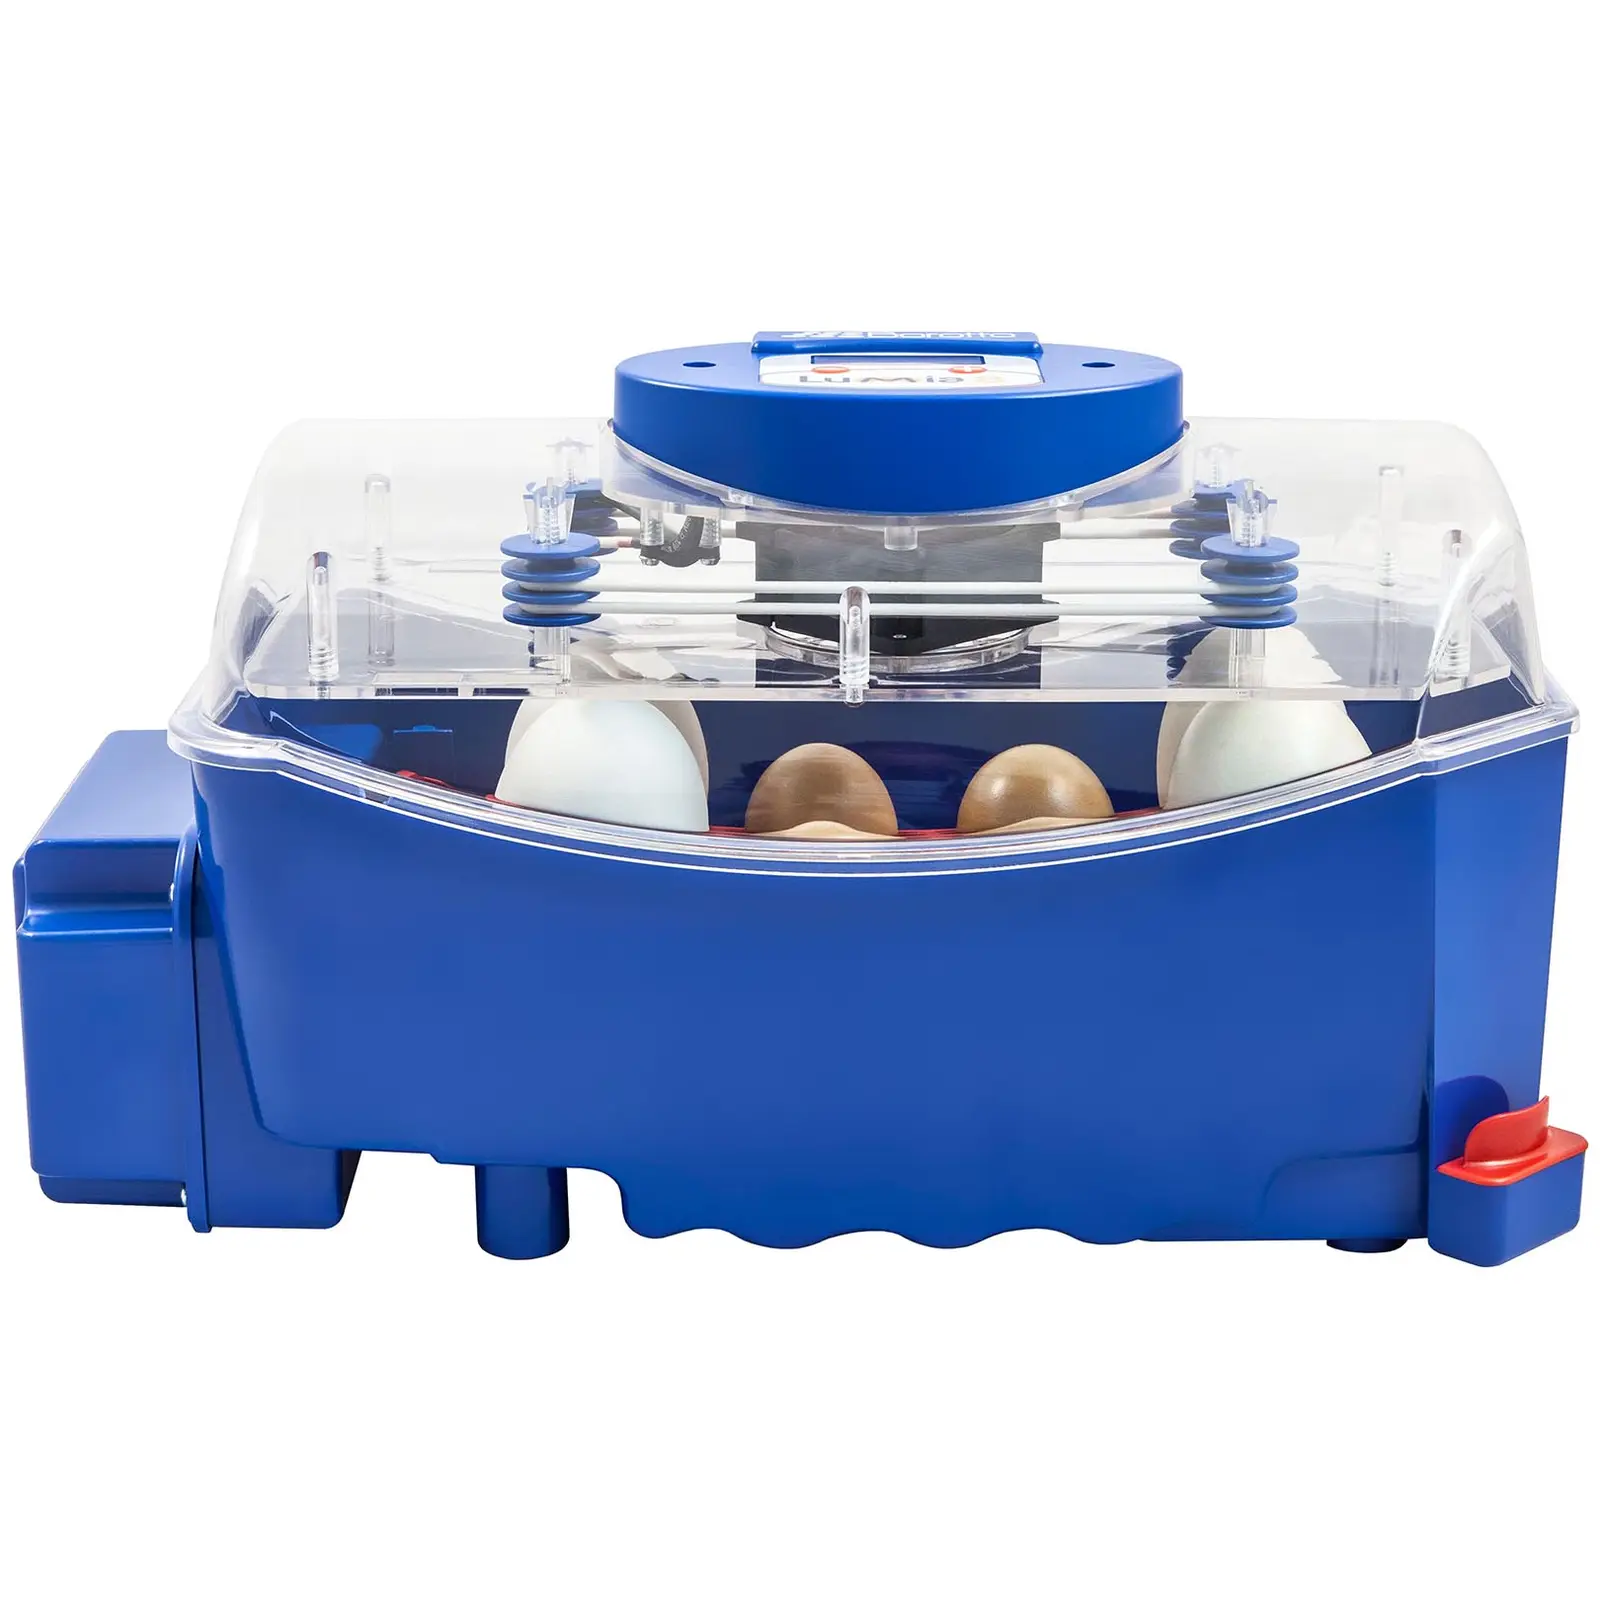 Brutapparat - 8 Eier - vollautomatisch